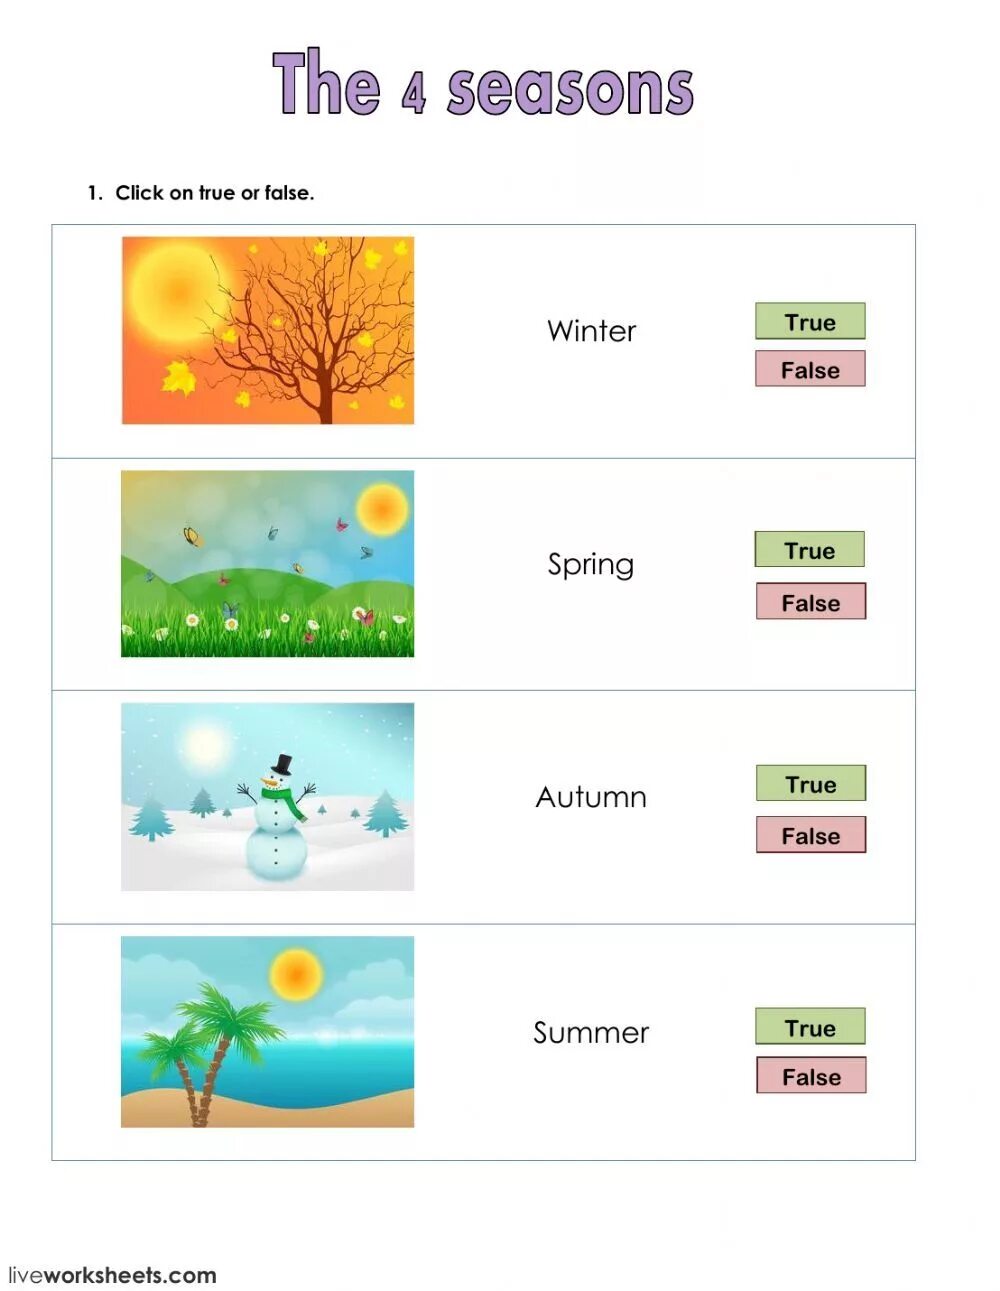 Seasons tasks. Seasons and months задания. Времена года на английском упражнения. Задания английский язык время гогода для детей.